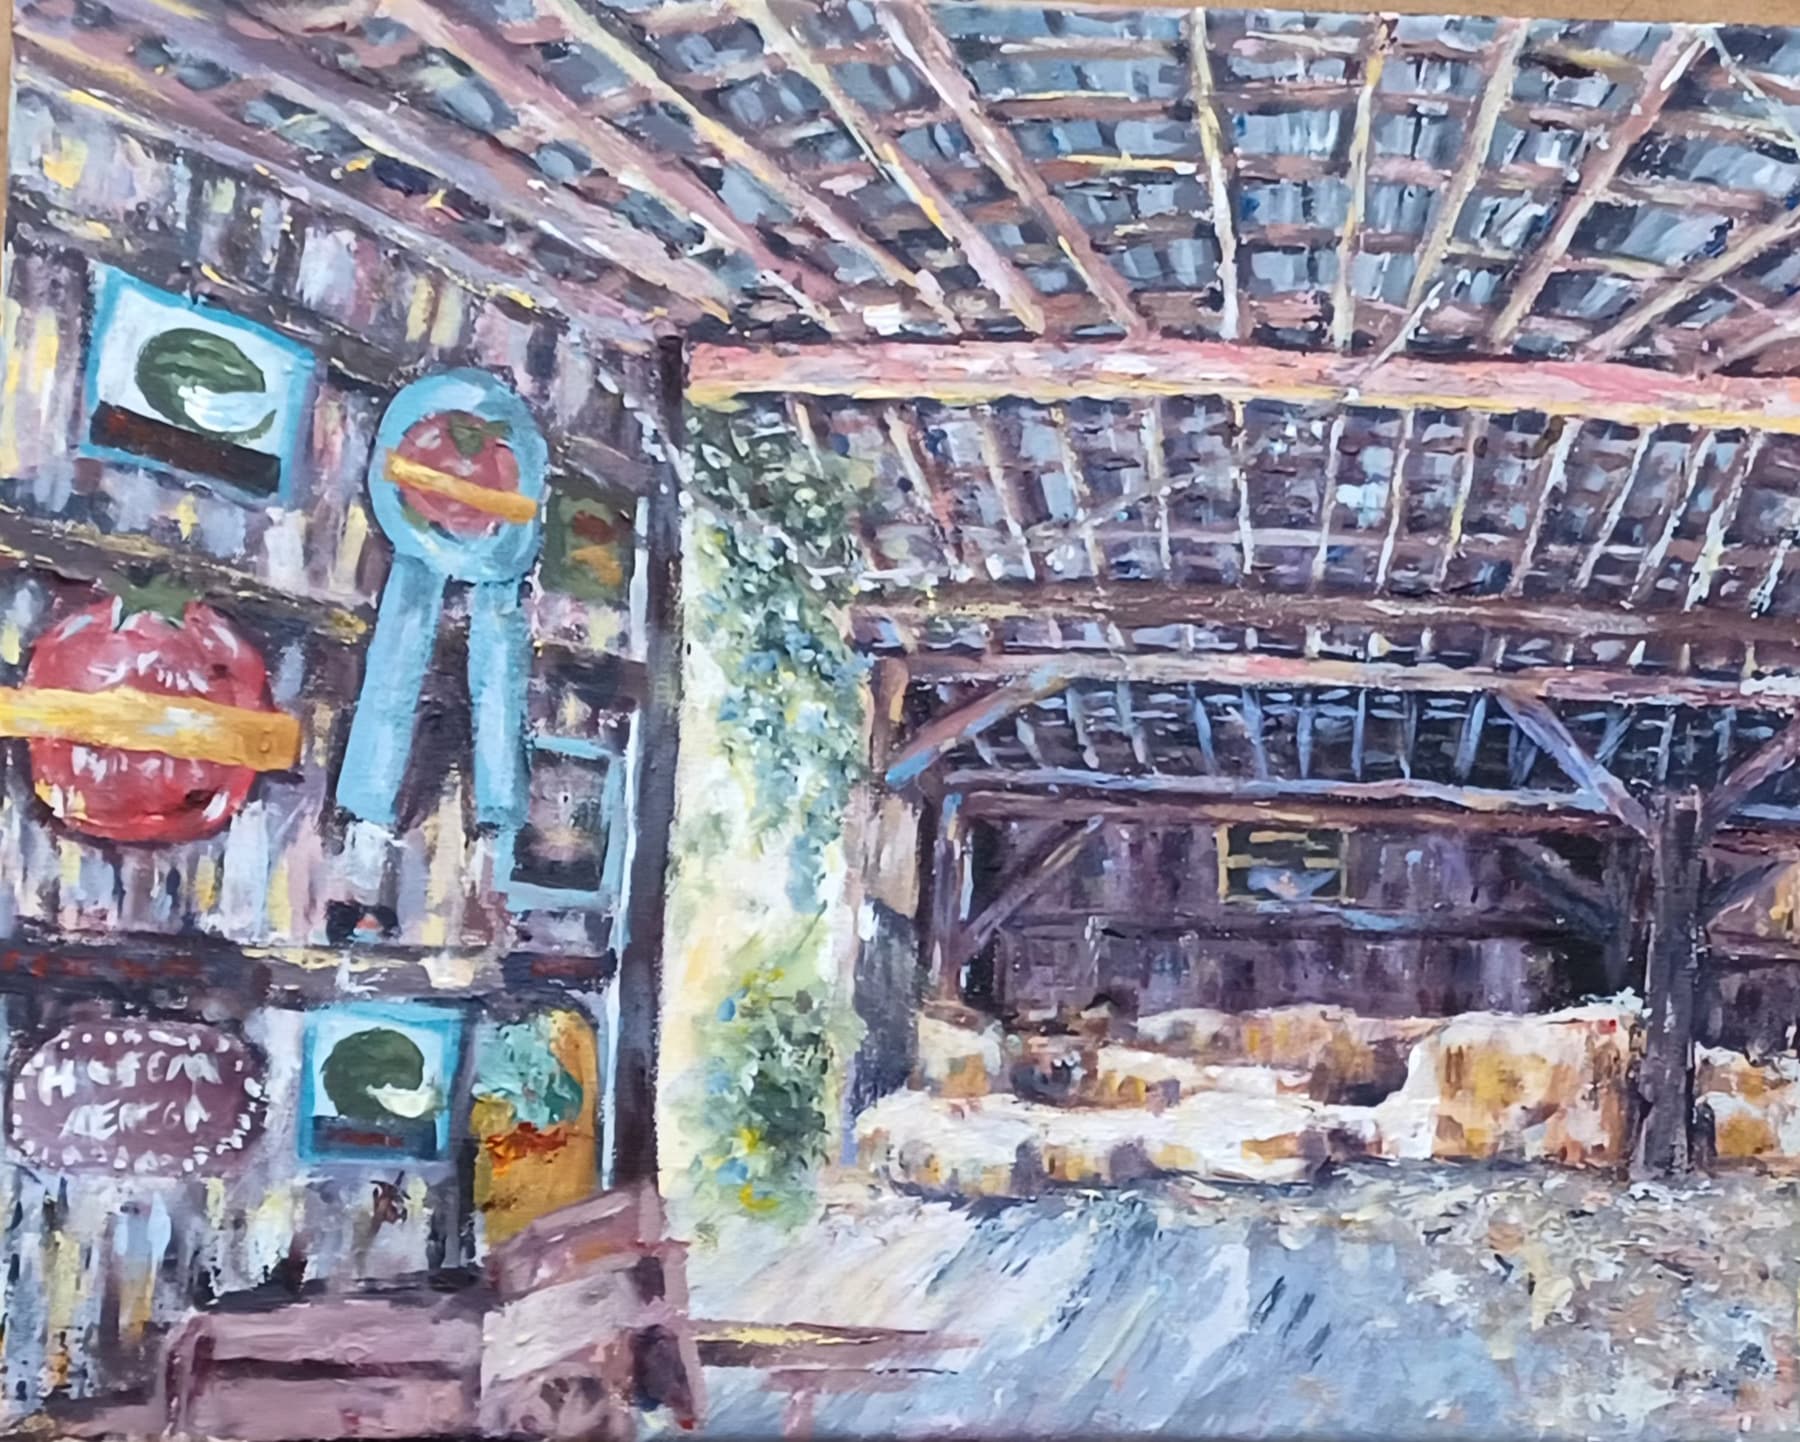 “The Barn" by Abby Caldwell